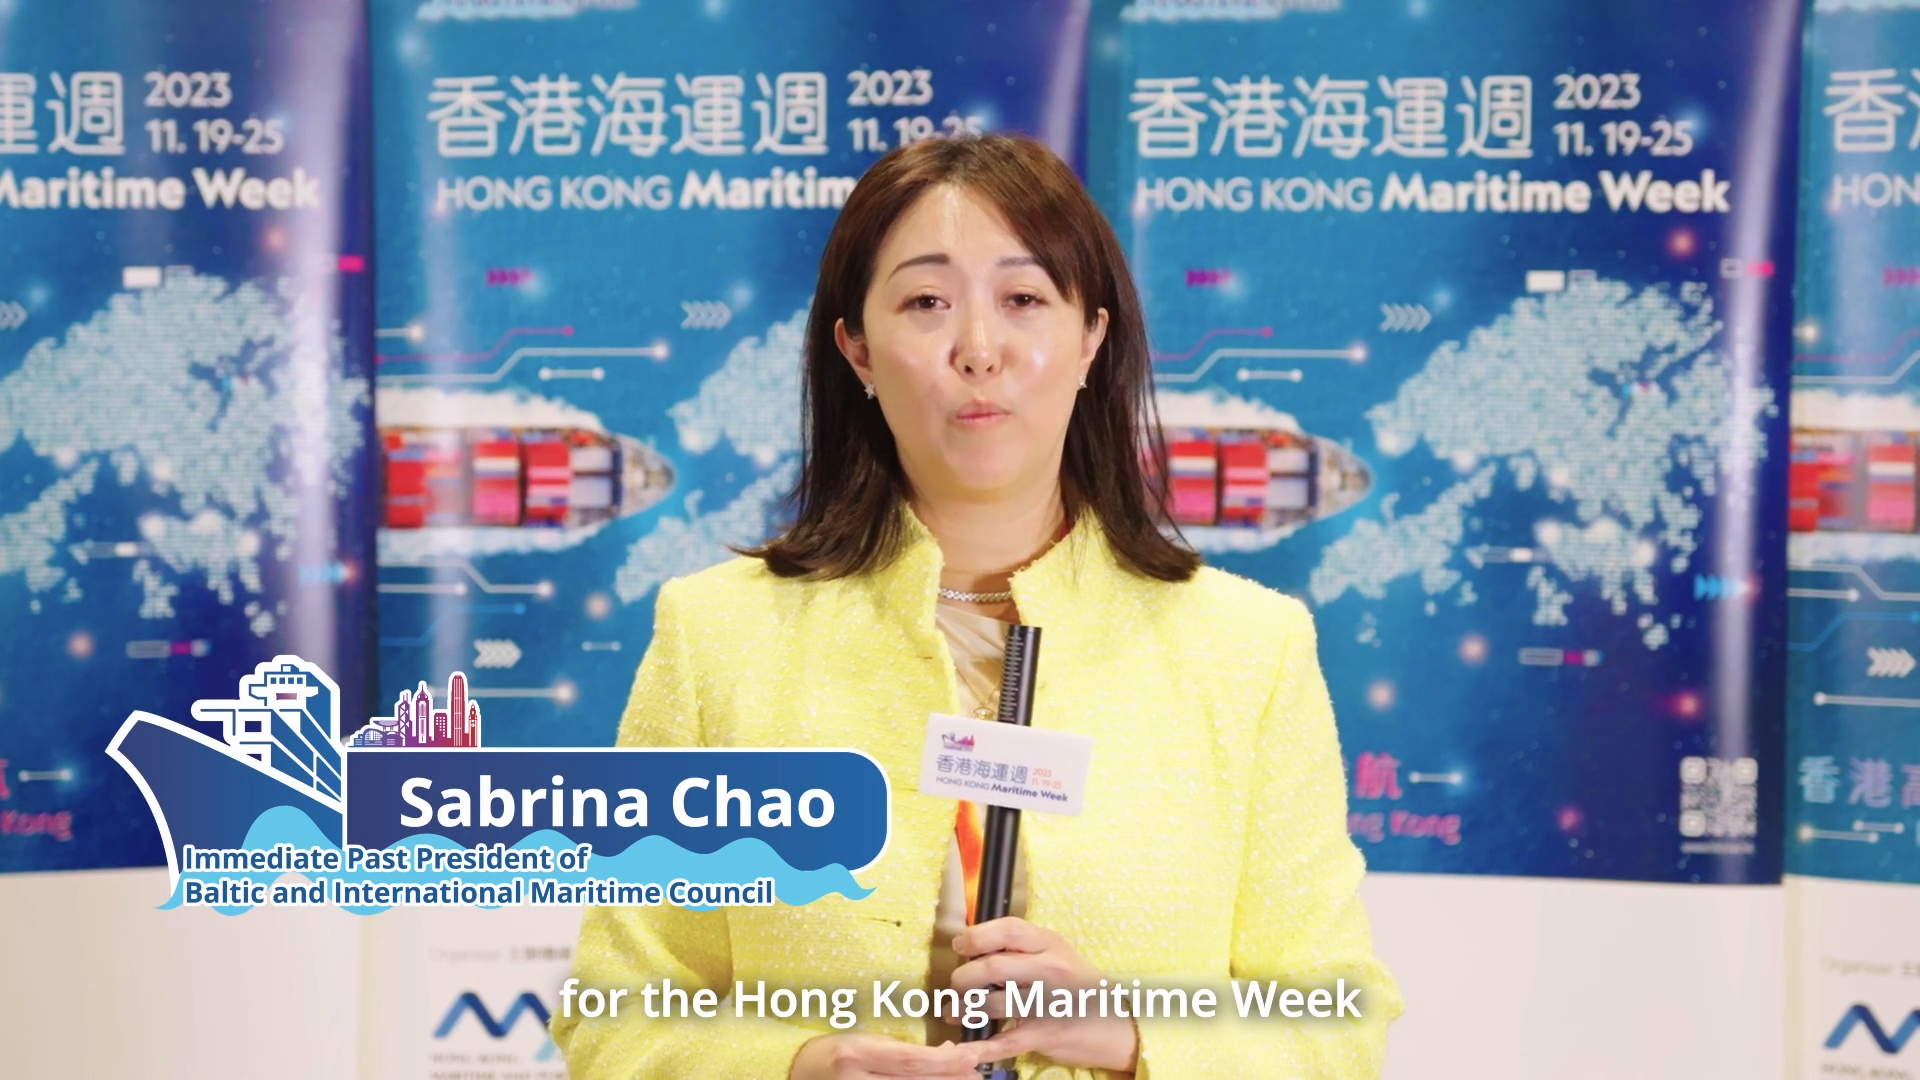 香港海運週2023 - 波羅的海國際航運公會前主席趙式明女士 (只有英文)